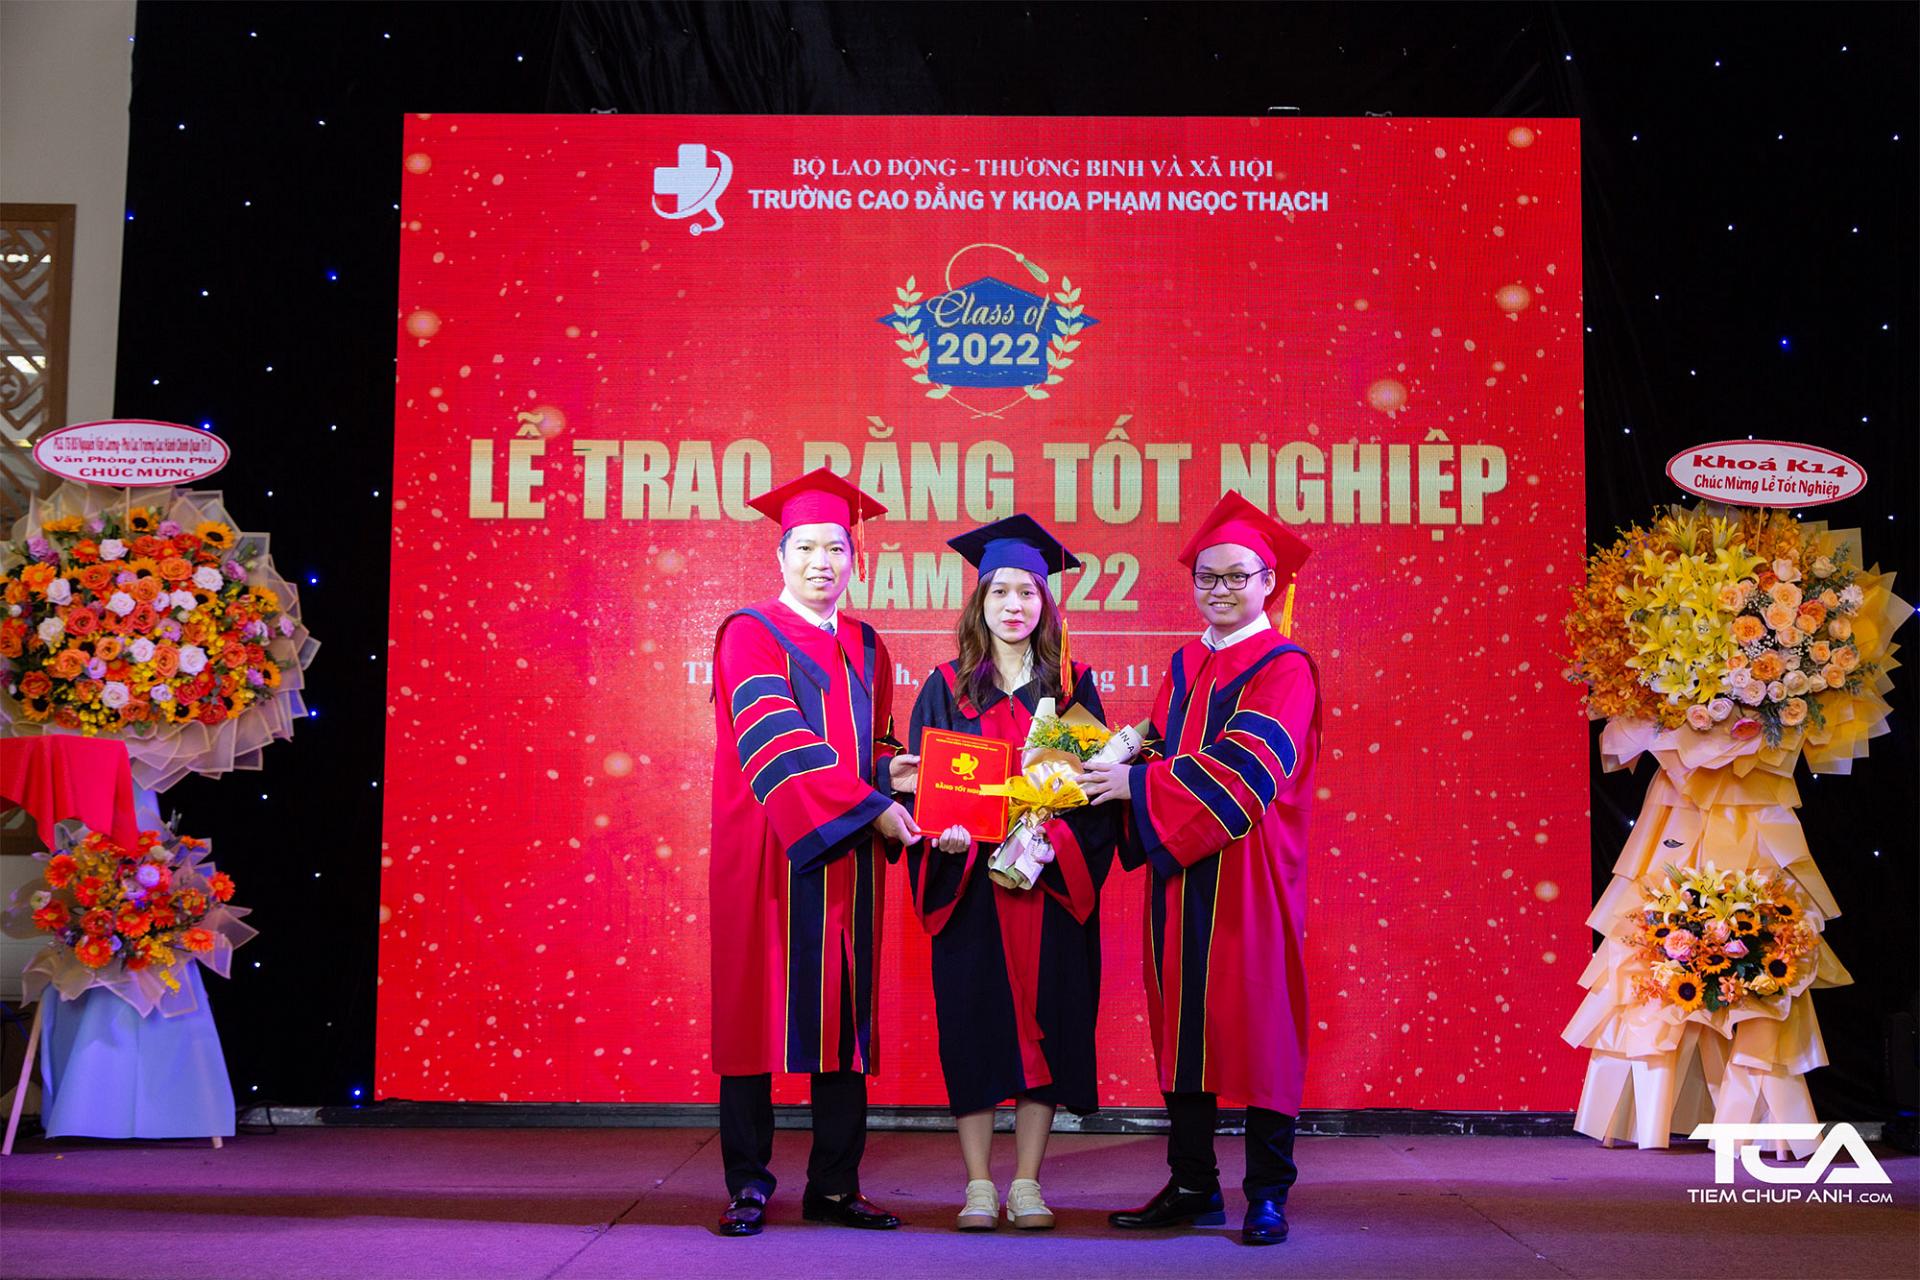 Sinh viên trường Cao đẳng y khoa Phạm Ngọc Thạch nhận bằng tốt nghiệp